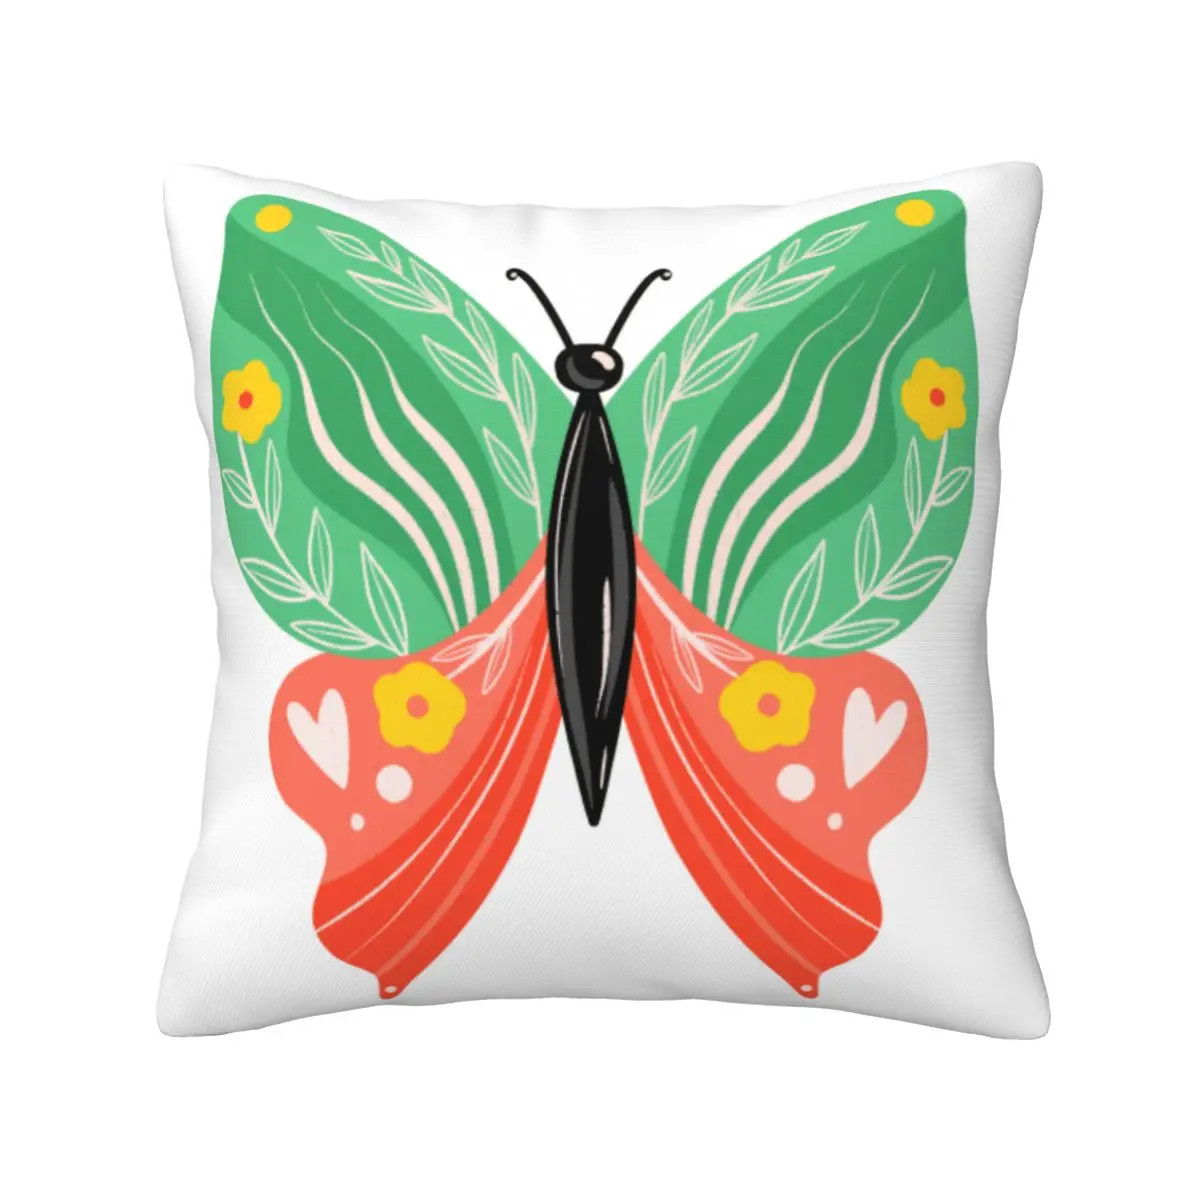 

Наволочка-бабочка дакимакура, подушка на заказ, шикарные подушки в стиле бохо, наслаждайтесь расслабляющим диваном с защитой от пиллинга